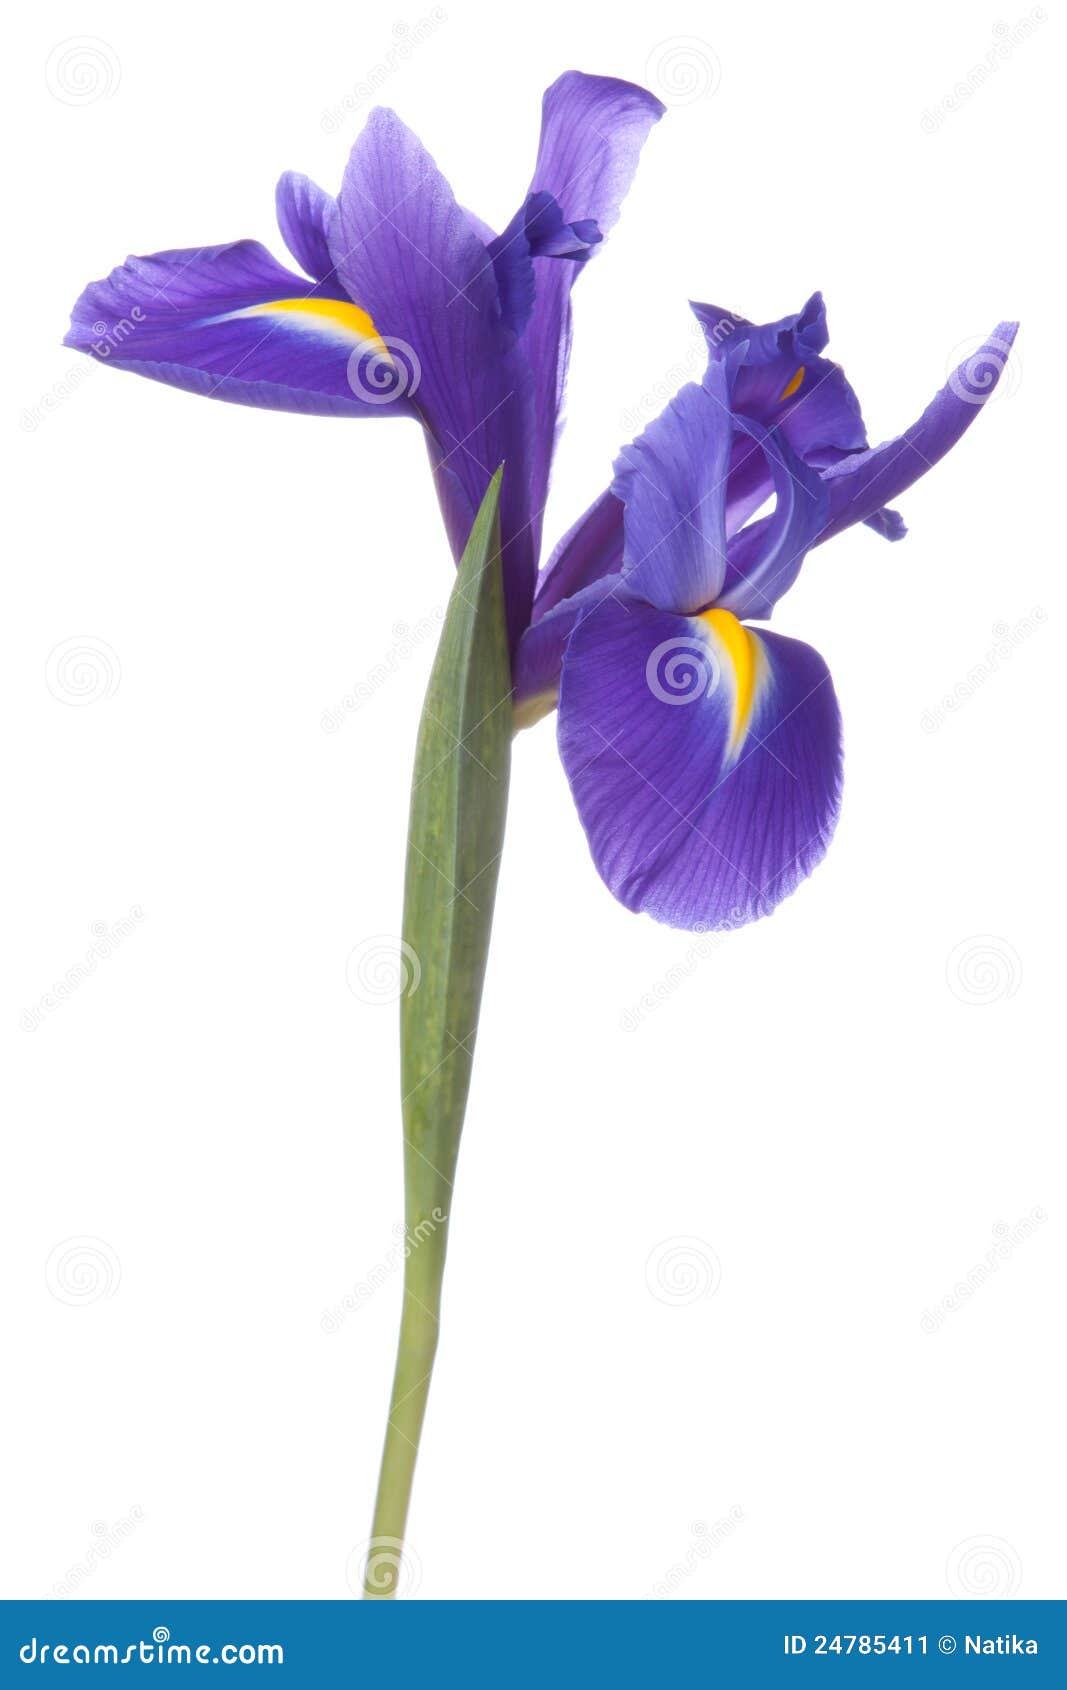 blue iris or blueflag flower